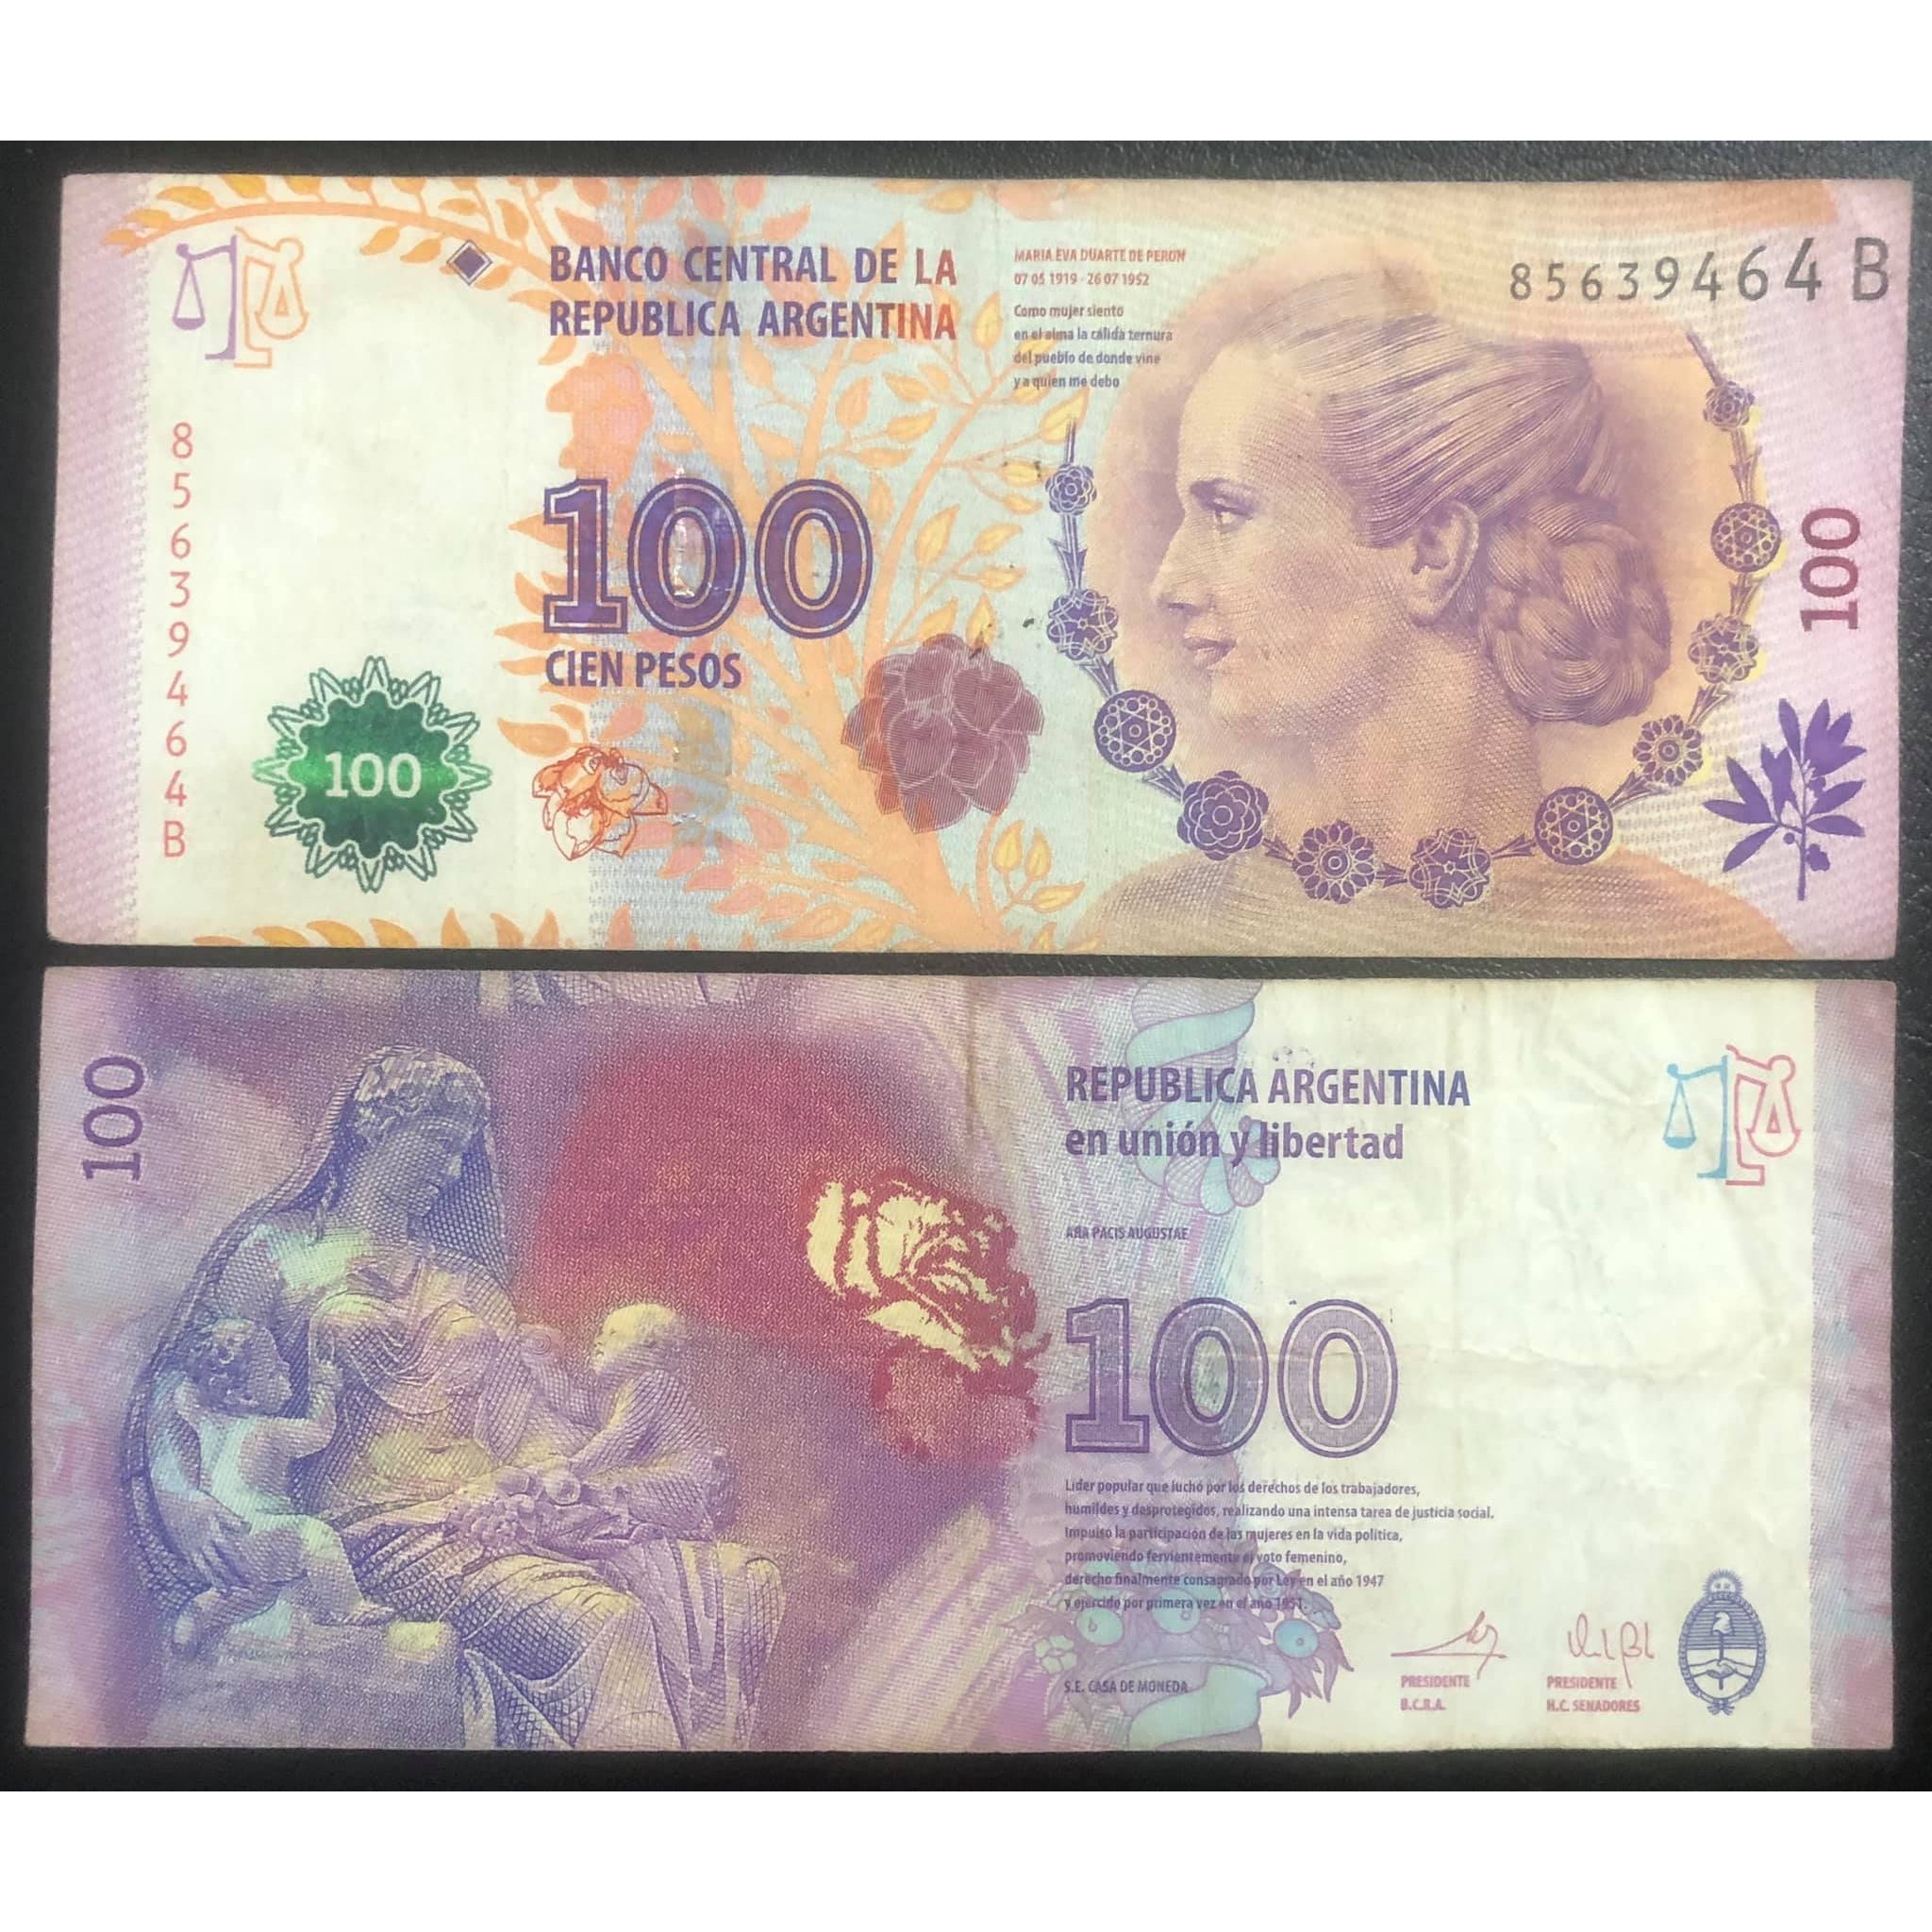 Tiền Argentina 100 pesos kỷ niệm 60 năm ngày mất của bà EVA PERÓN